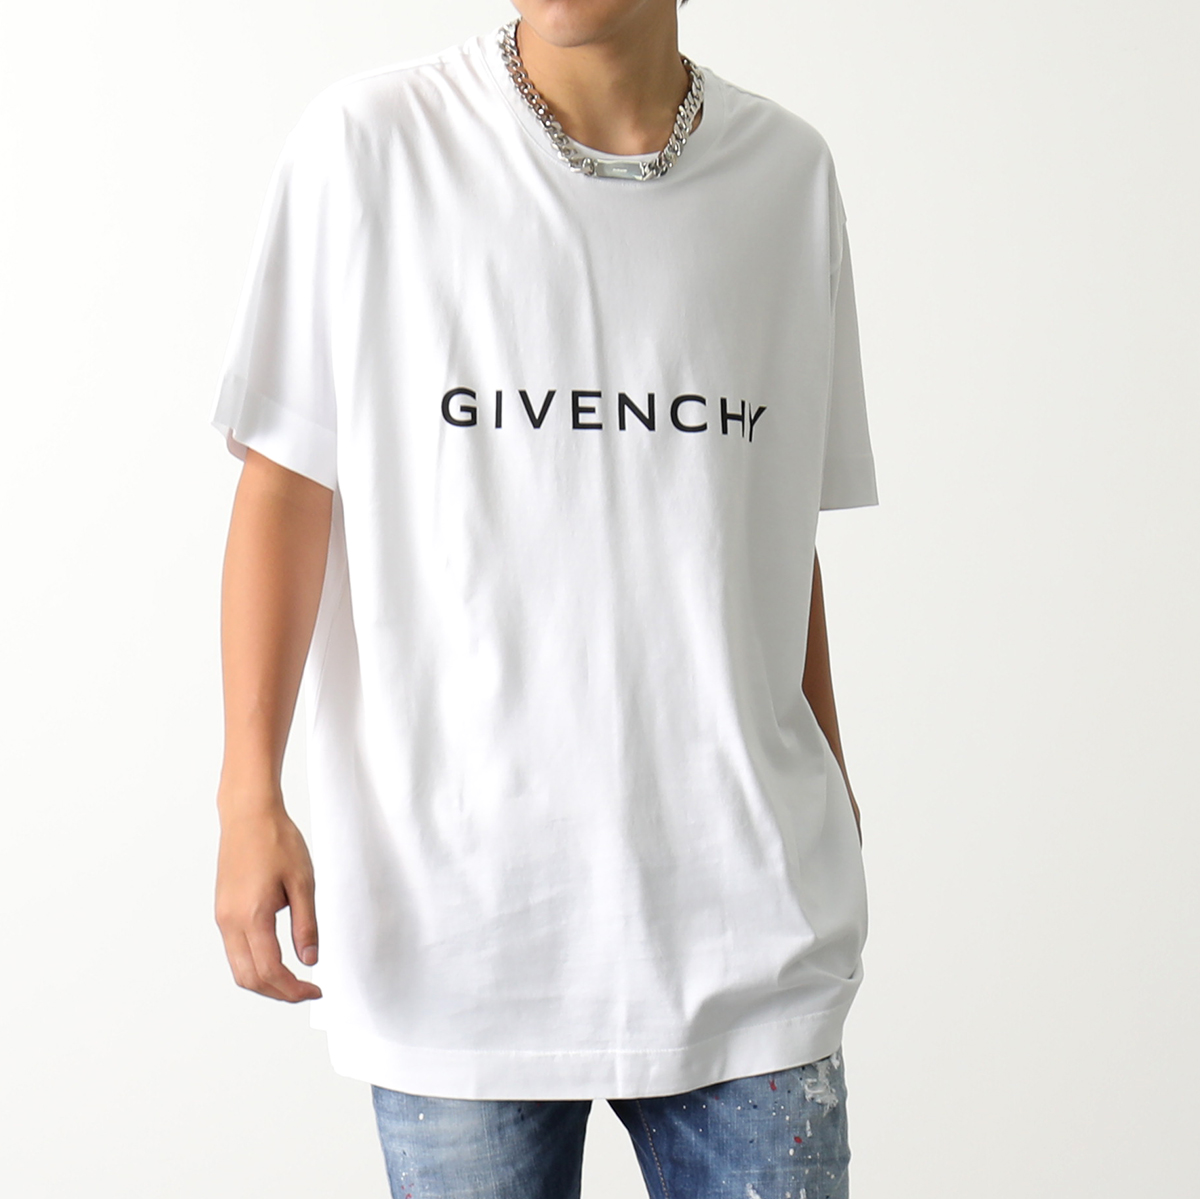 GIVENCHY ジバンシィ Tシャツ BM716N3YAC メンズ 半袖 カットソー ロゴT コットン クルーネック オーバーサイズ 4Gエンブレム  カラー2色